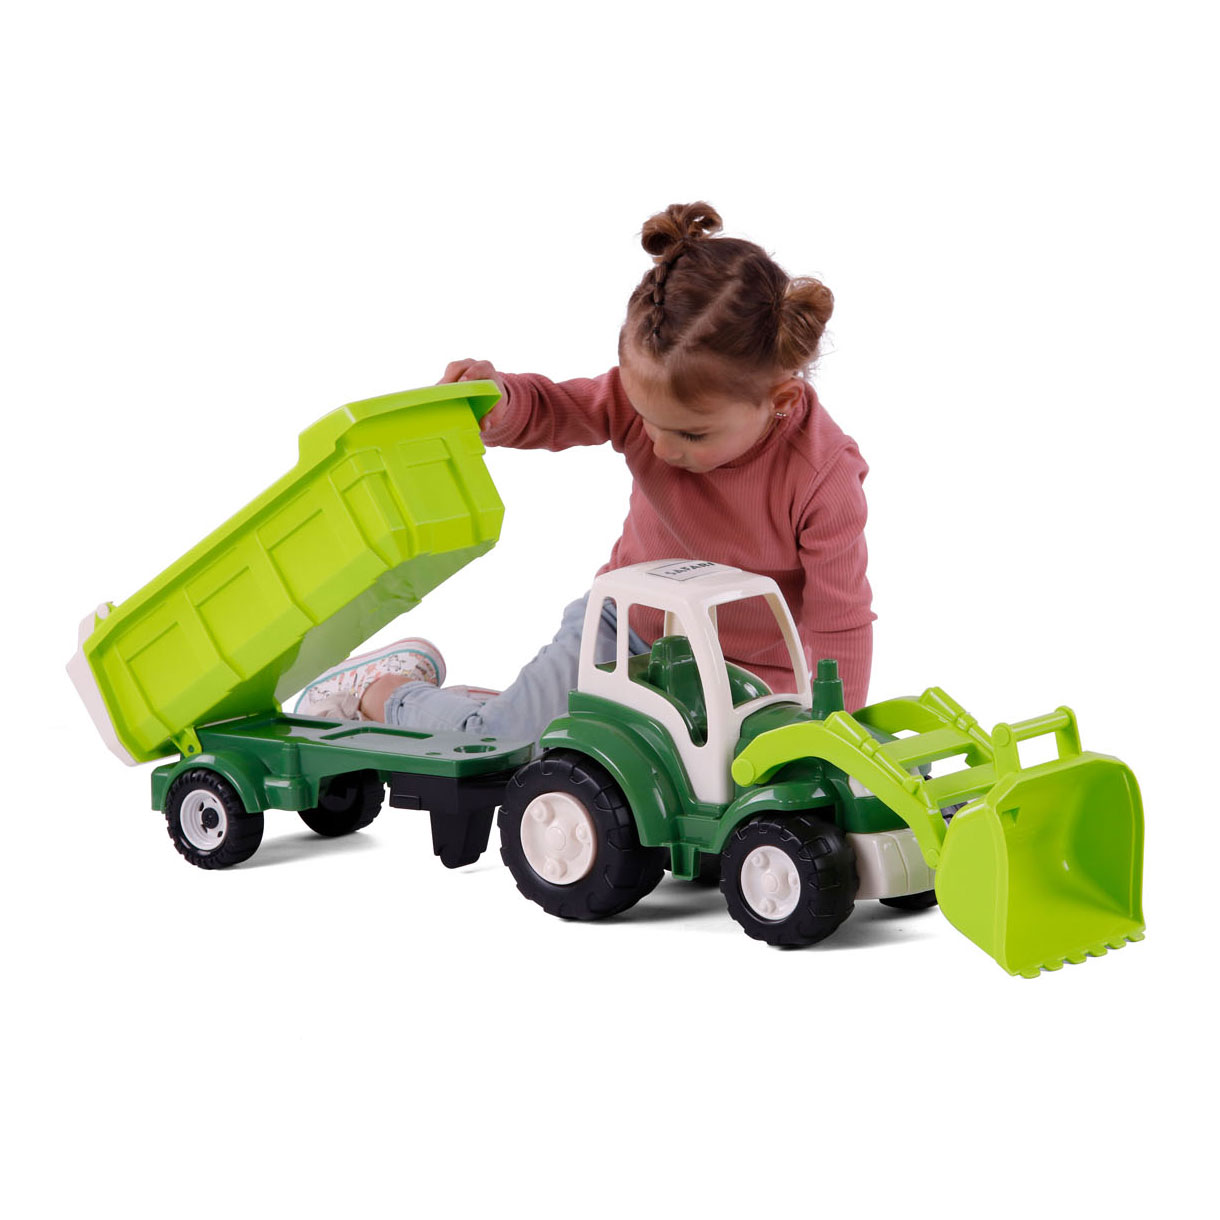 Tracteur Cavallino XL vert avec remorque benne, 86,5 cm